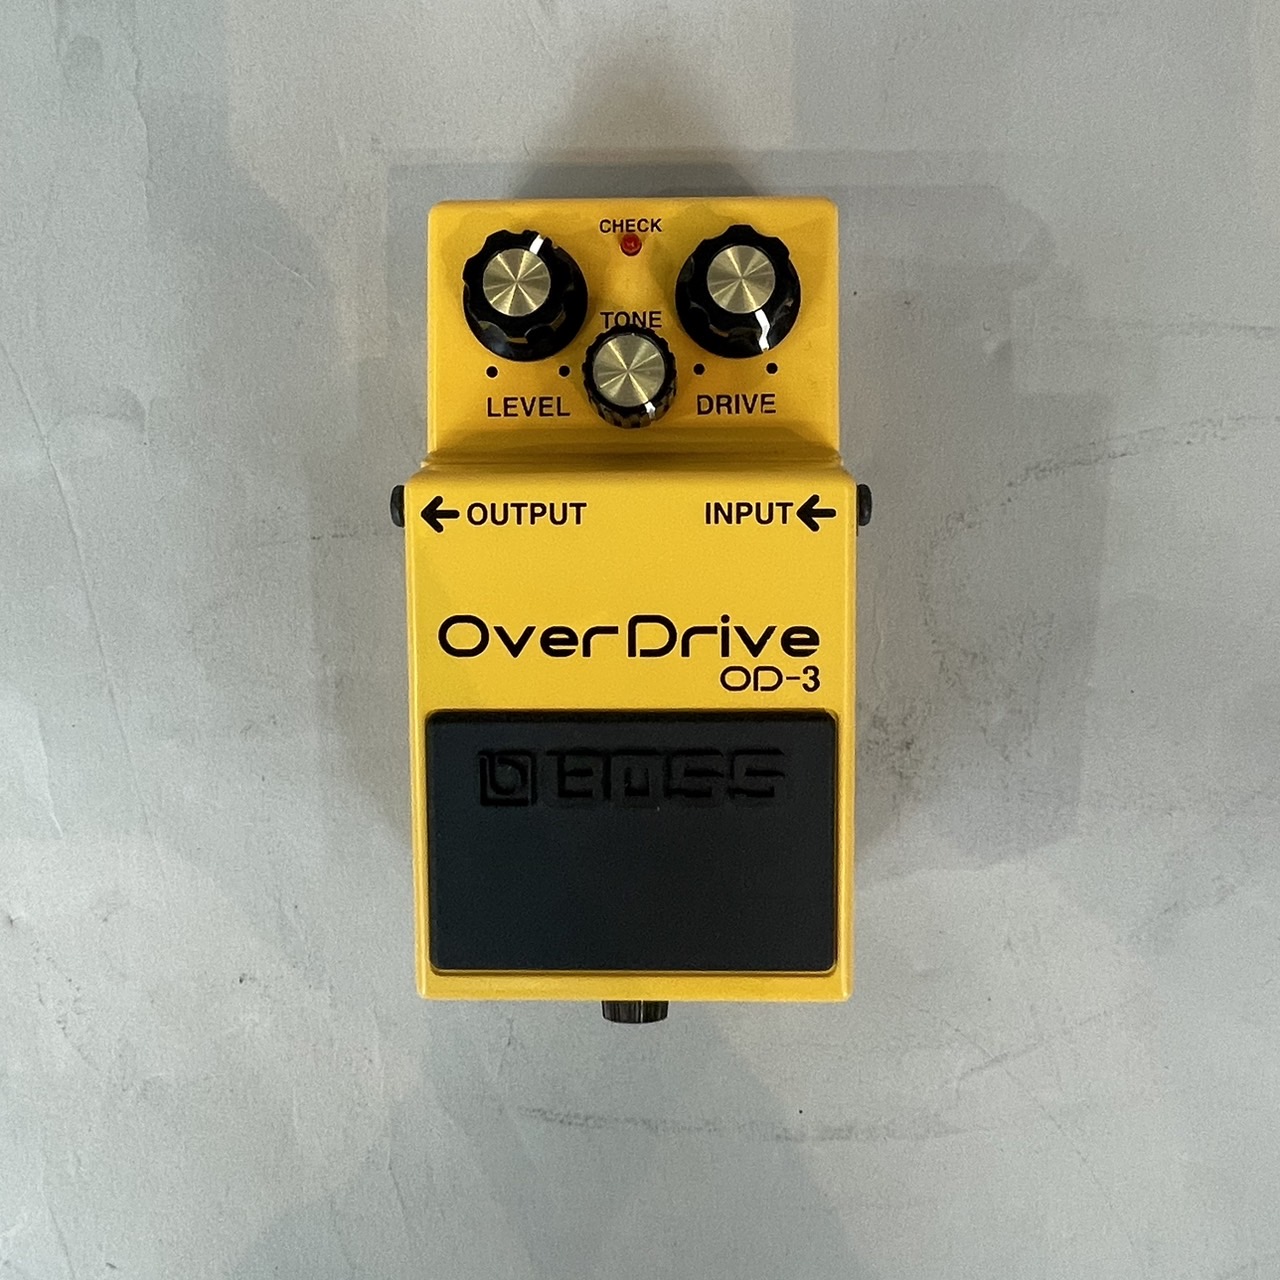 BOSS bass overdrive OD3 korg エフェクターセット